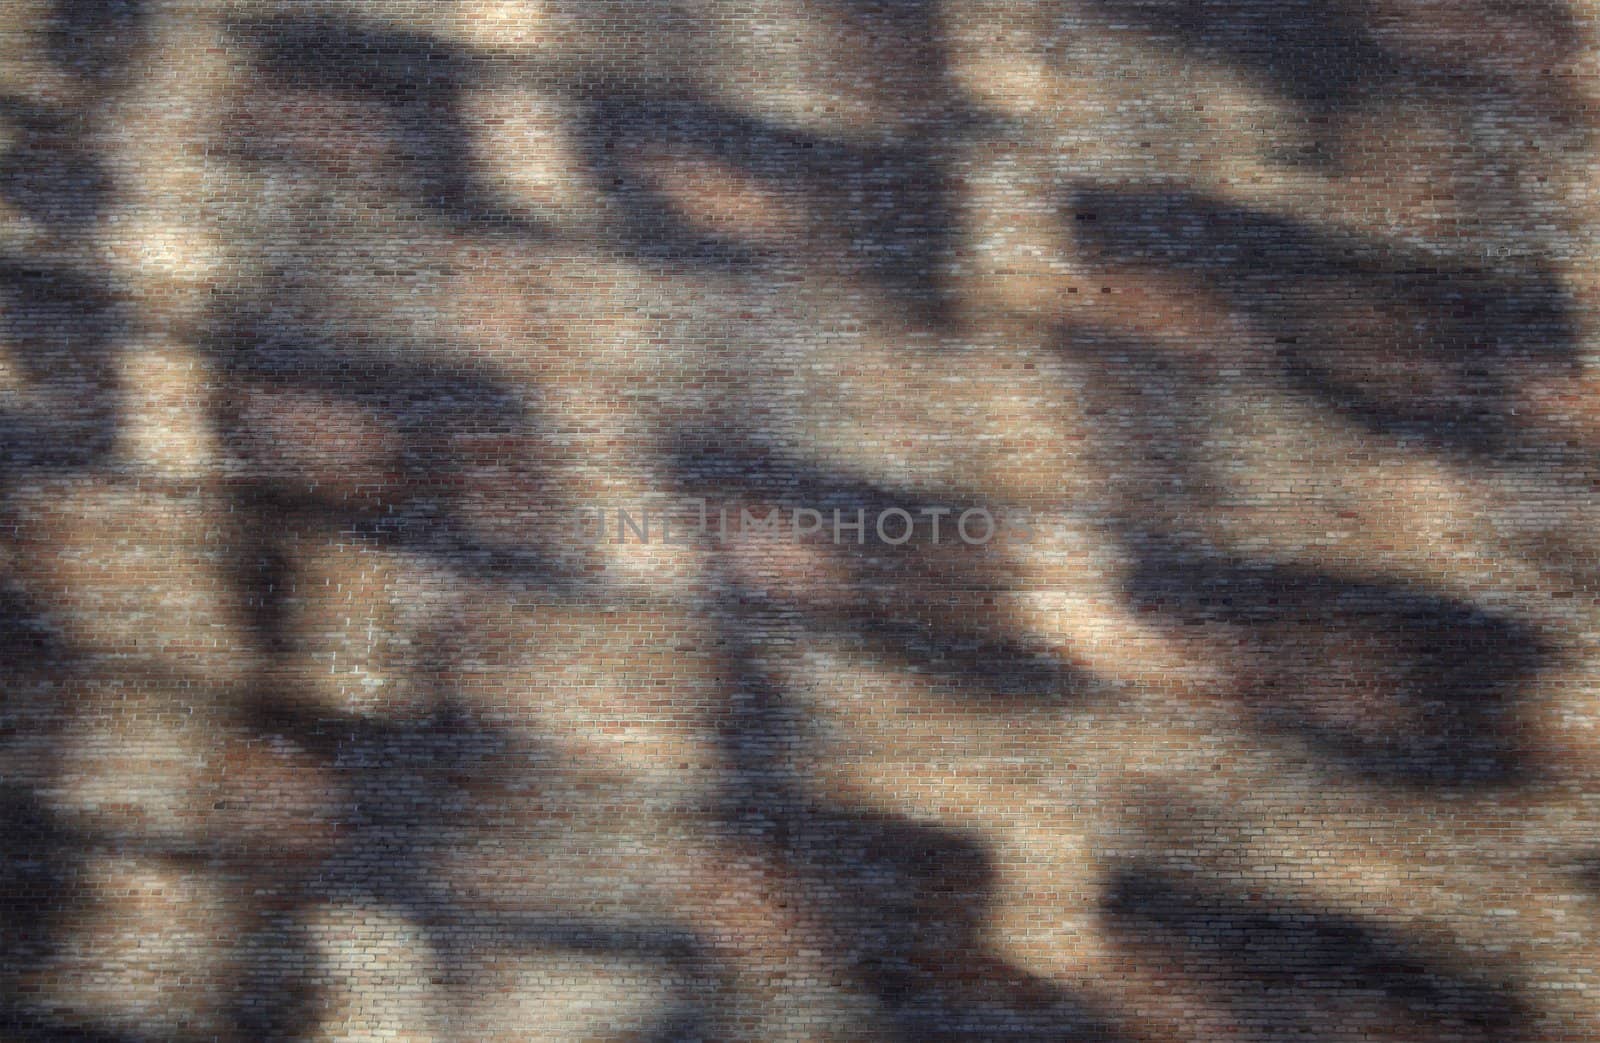 Abstract shadows on a brick wall by anikasalsera